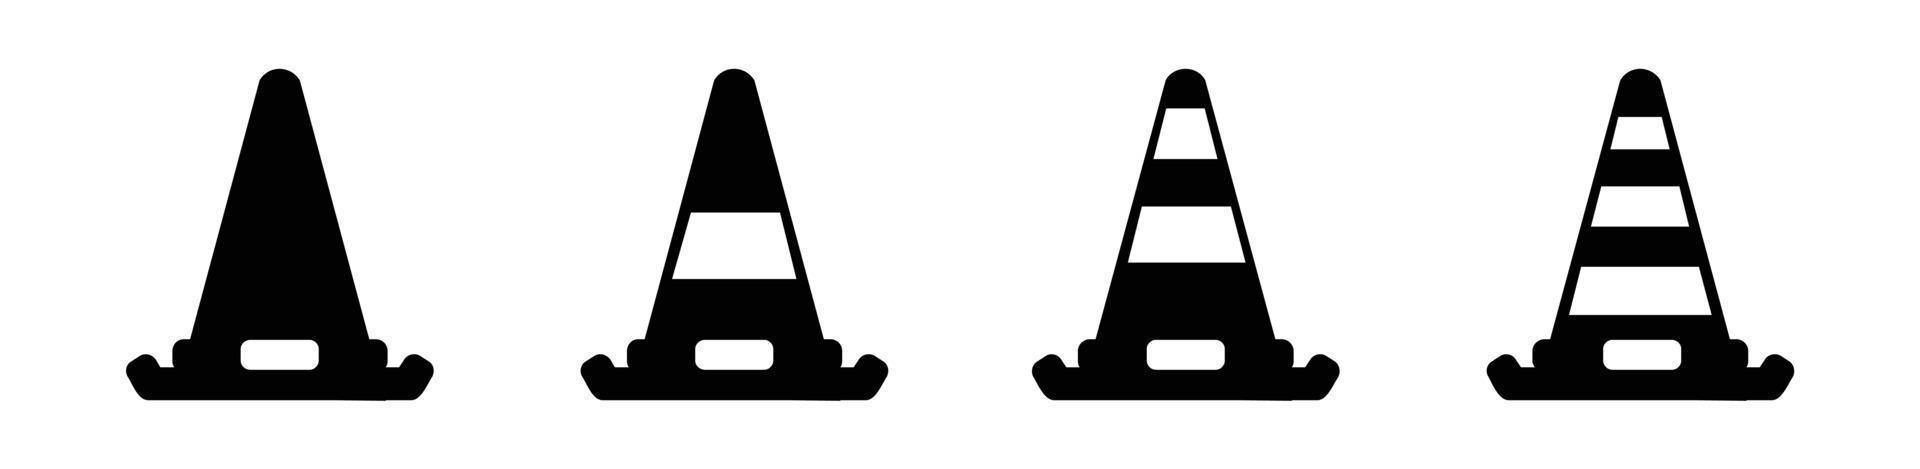 Kegelsymbol in verschiedenen Stilvektoren, zweifarbige und schwarze Kegelvektorsymbole entworfen, Leitkegelsymbolsatz, Barrierensymbolvektorillustration vektor